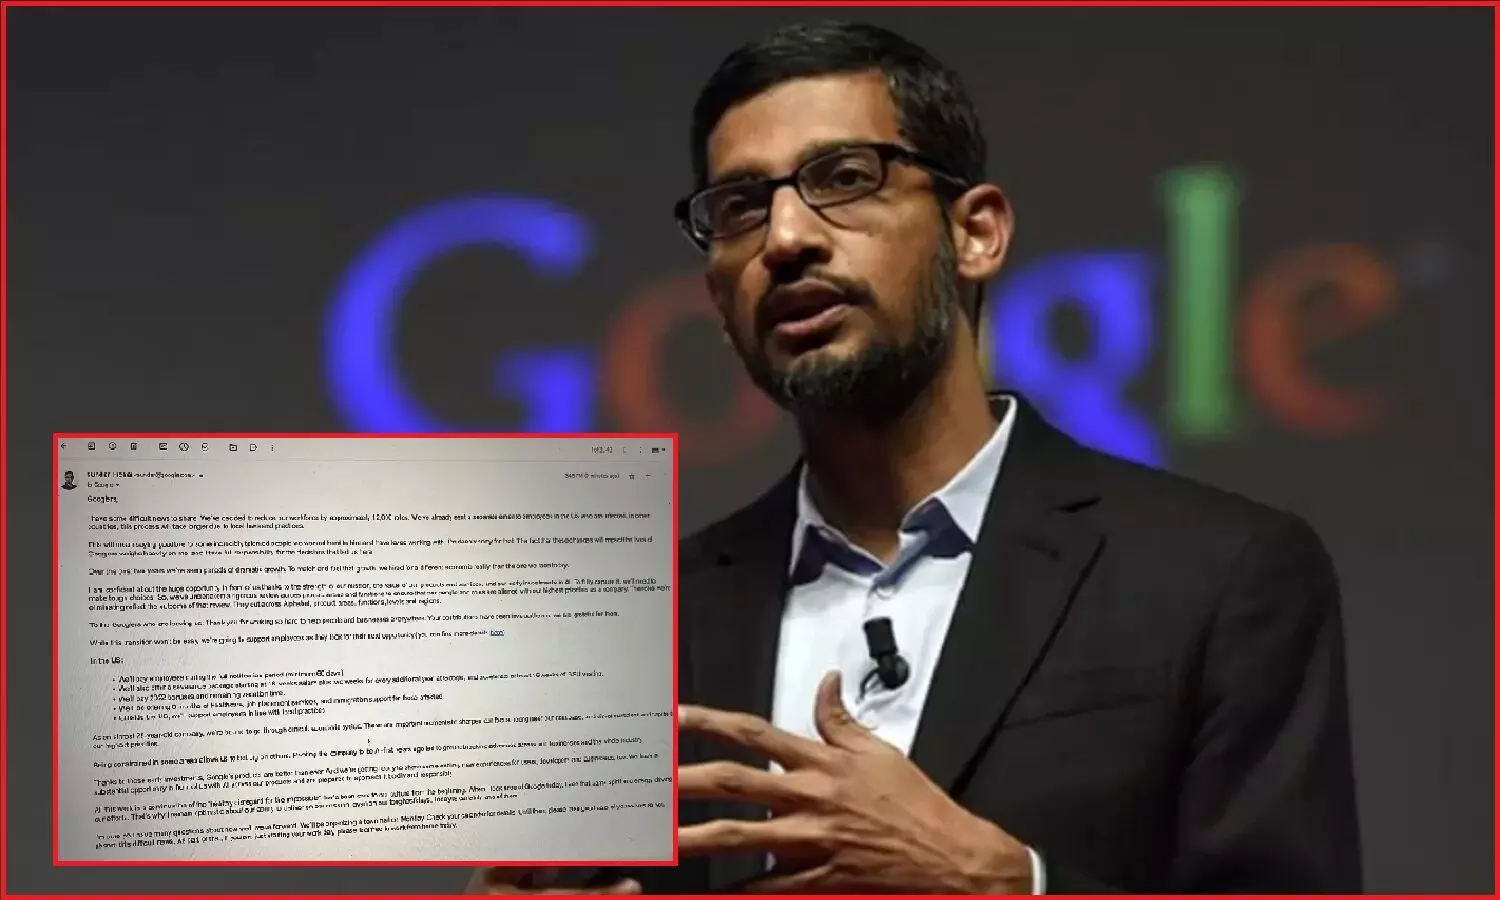 Google Layoffs : अब गूगल ने की 12000 कर्मचारियों की छंटनी, CEO सुंदर पिचाई ने इमोशनल नोट लिखकर ली जिम्मेदारी